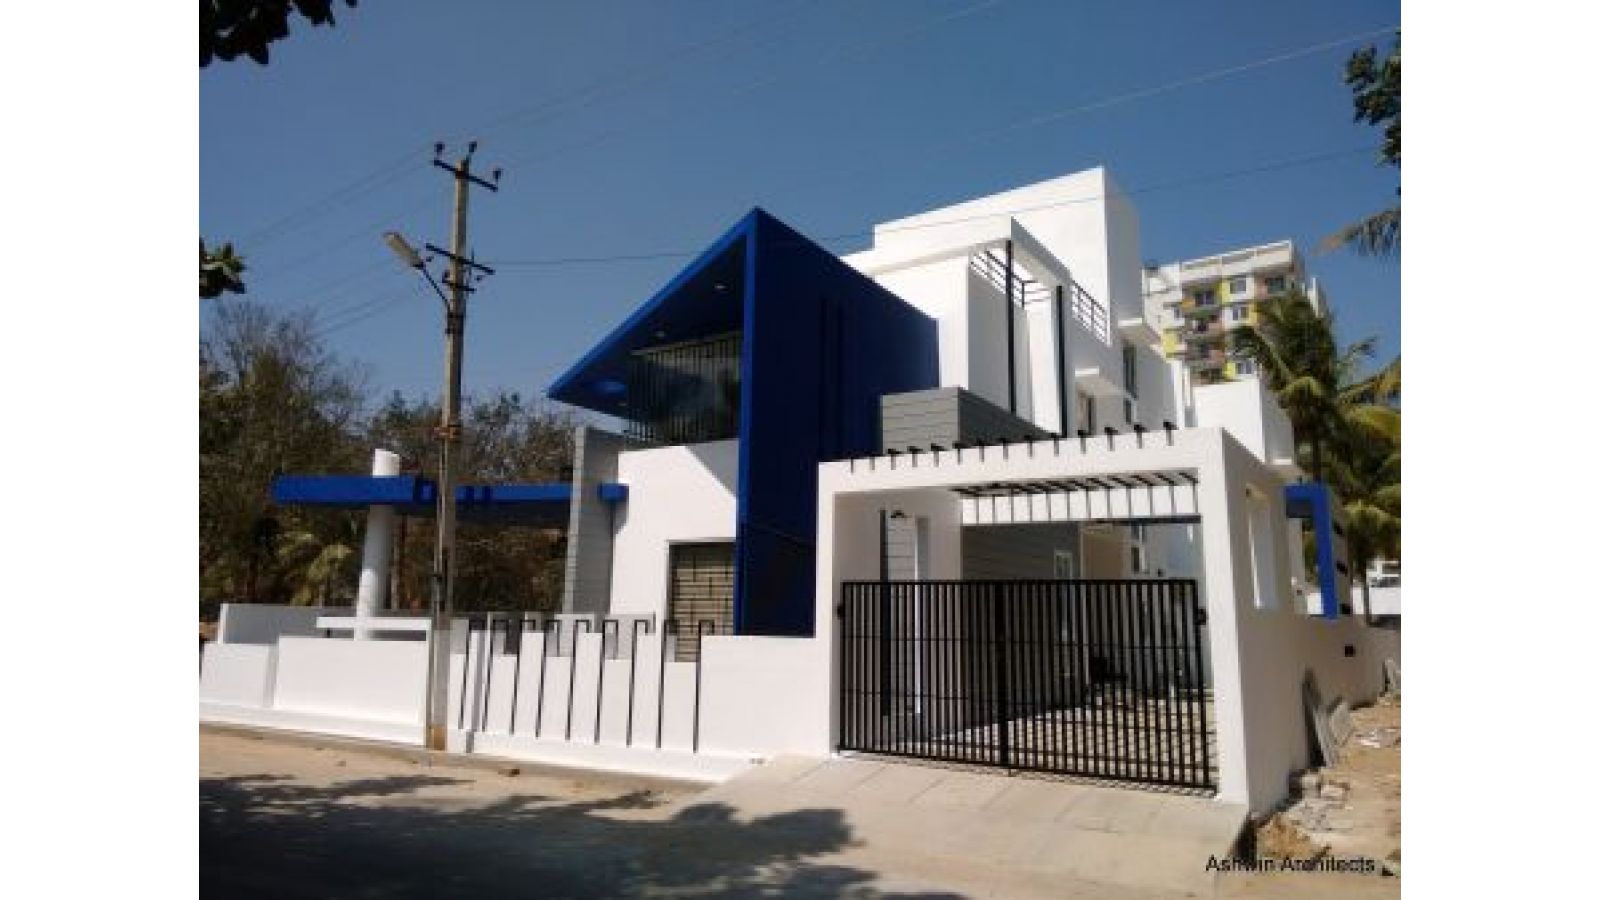 Architects - Modern Home Bangalore